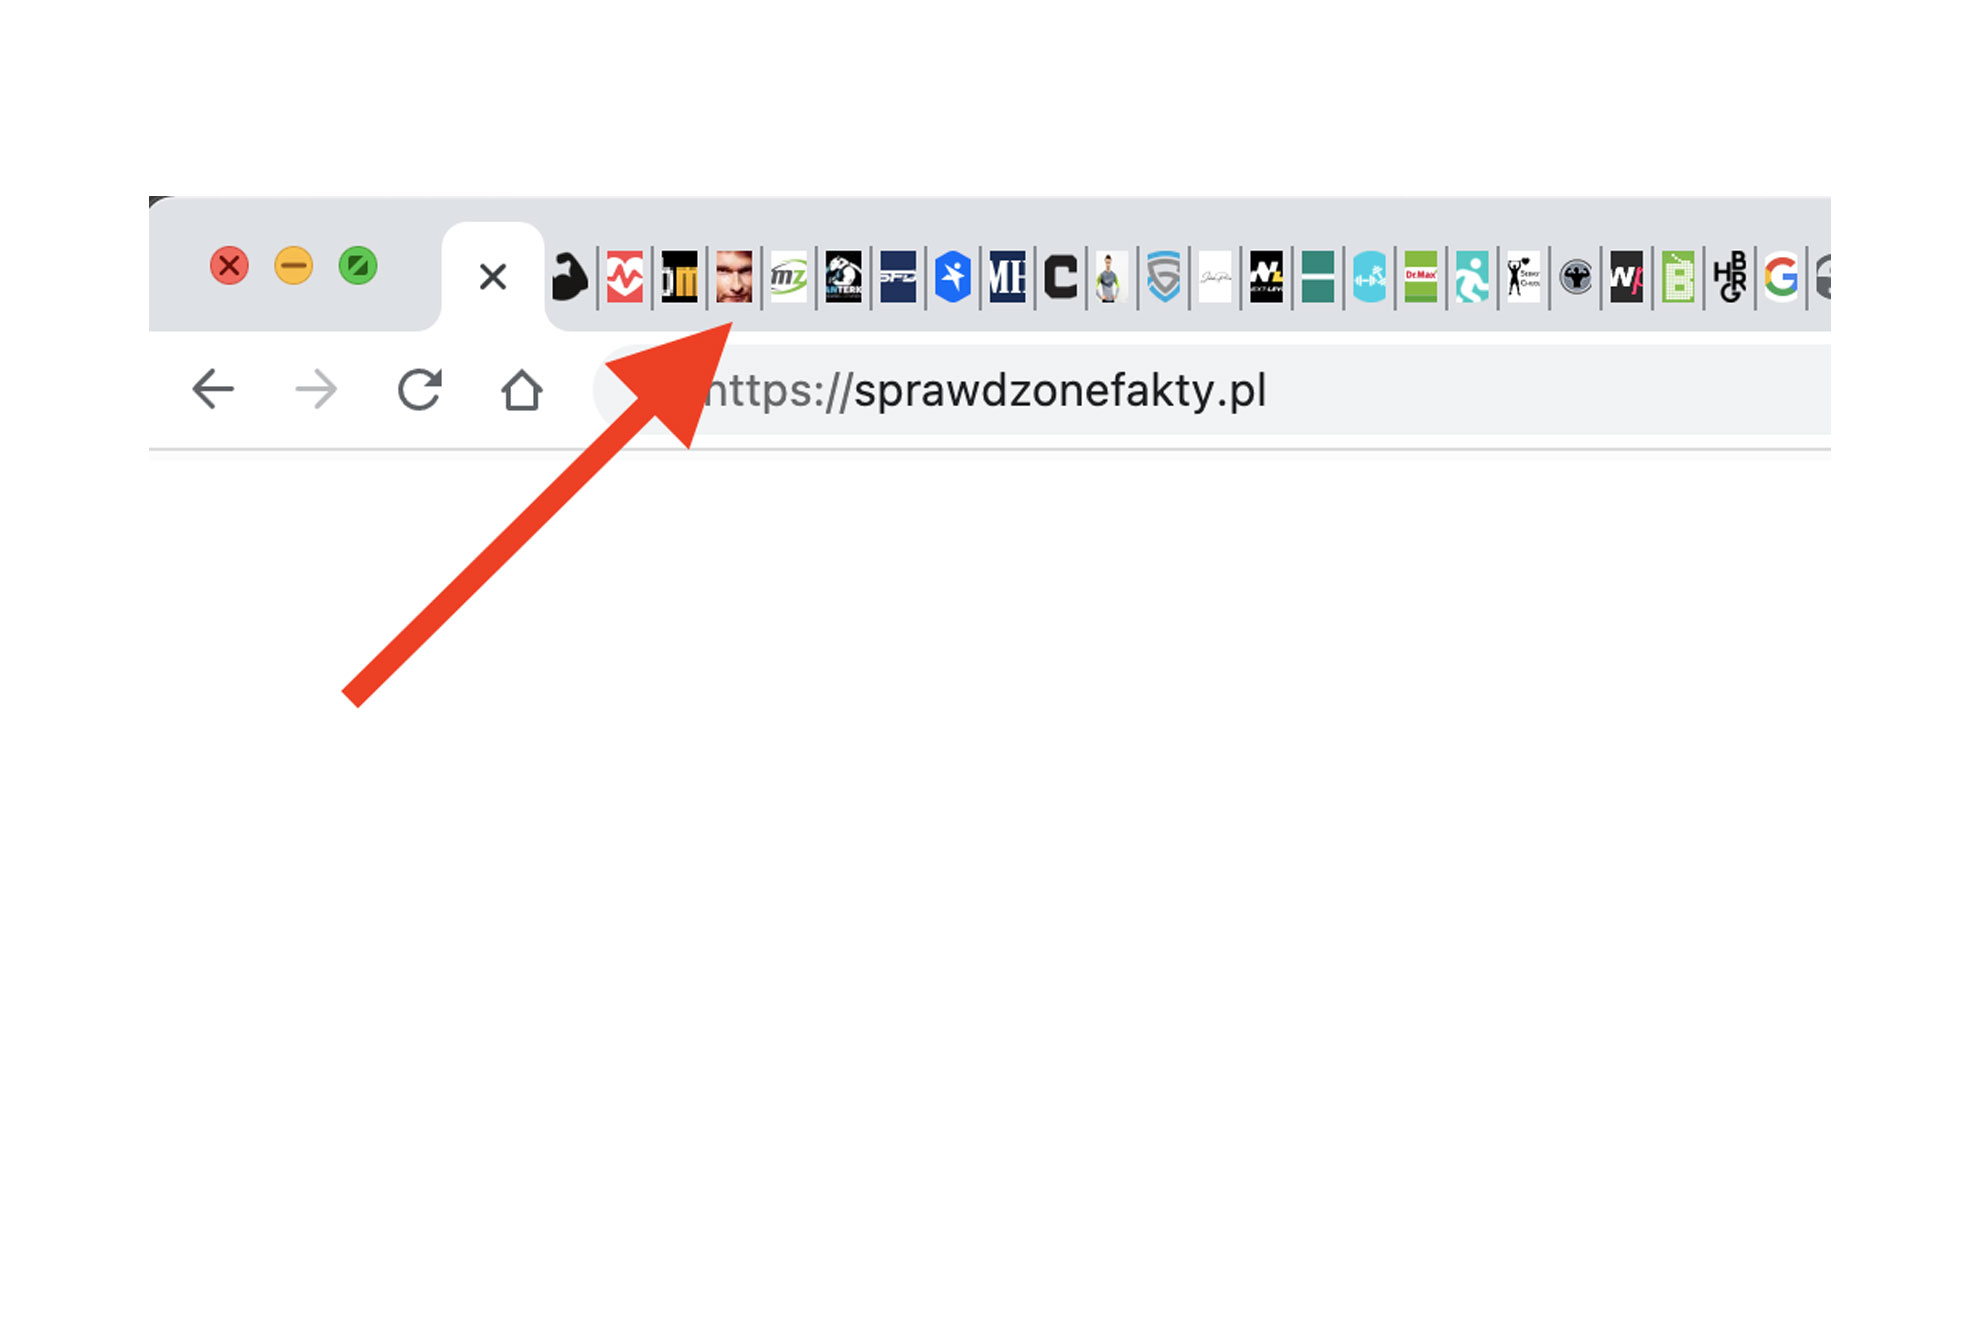 Zrzut ekranu z przeglądarki Chrome z otwartymi tabami z faviconami